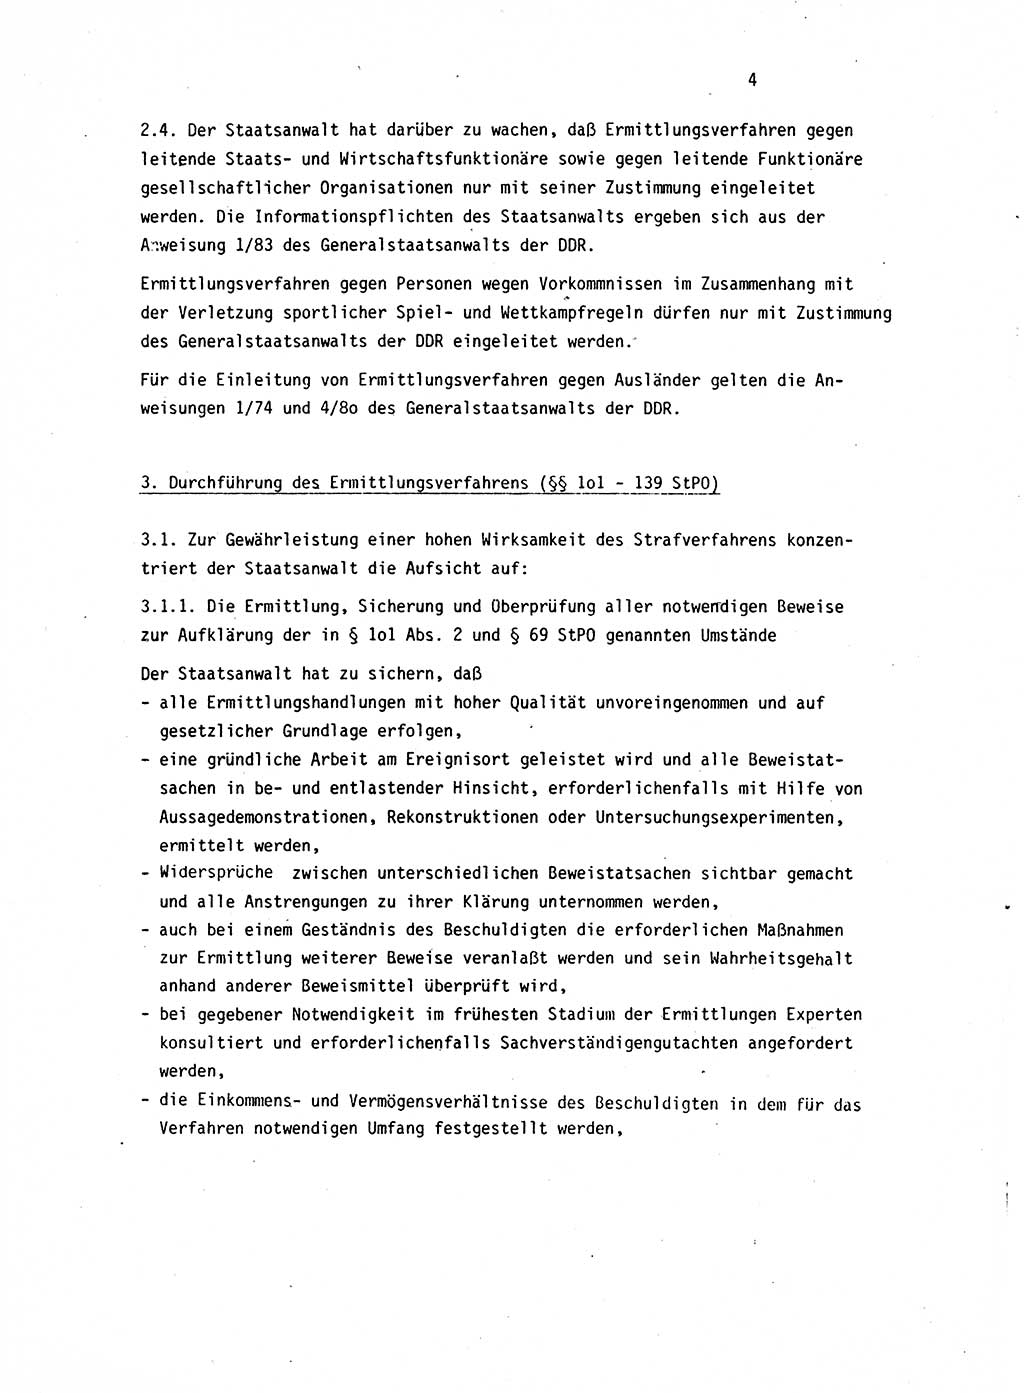 Leitung des Ermittlungsverfahren (EV) durch den Staatsanwalt [Deutsche Demokratische Republik (DDR)] 1985, Seite 4 (Ltg. EV StA DDR 1985, S. 4)